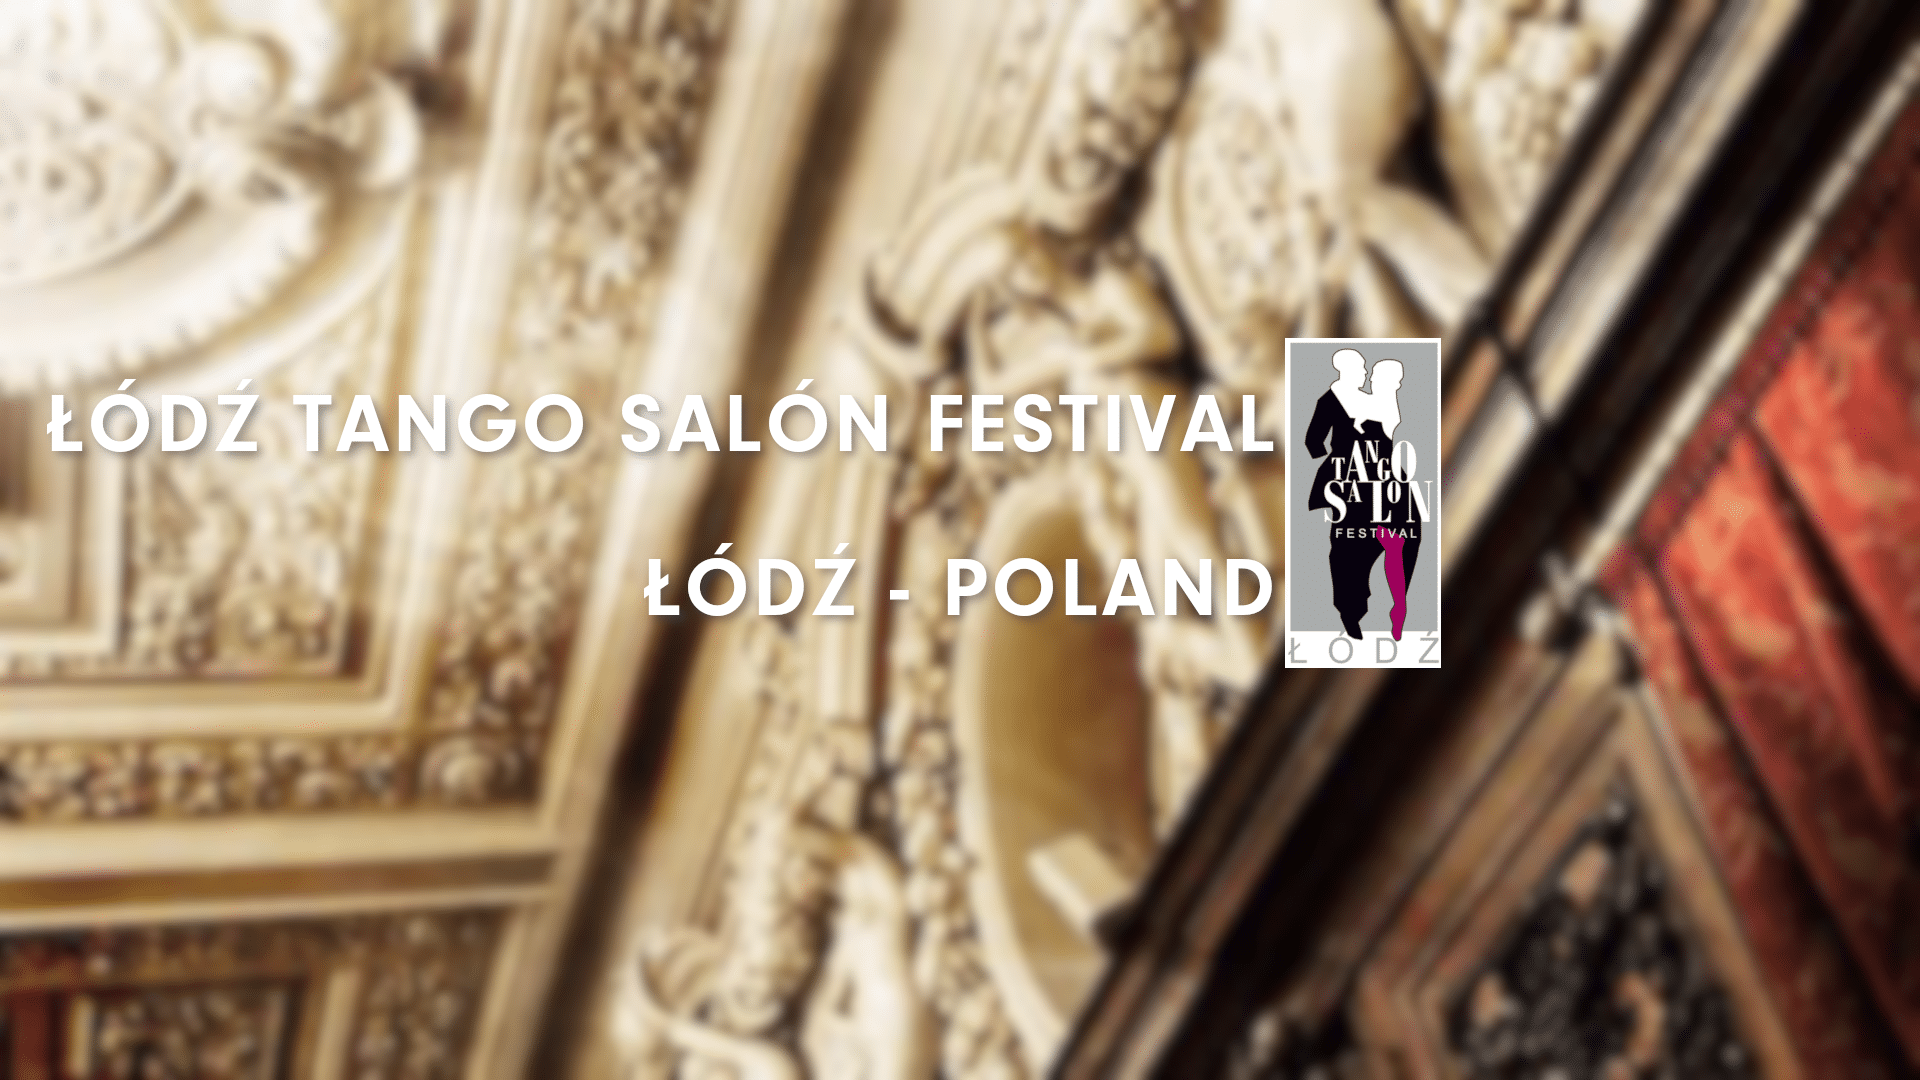 Lodz Tango Salon Festival